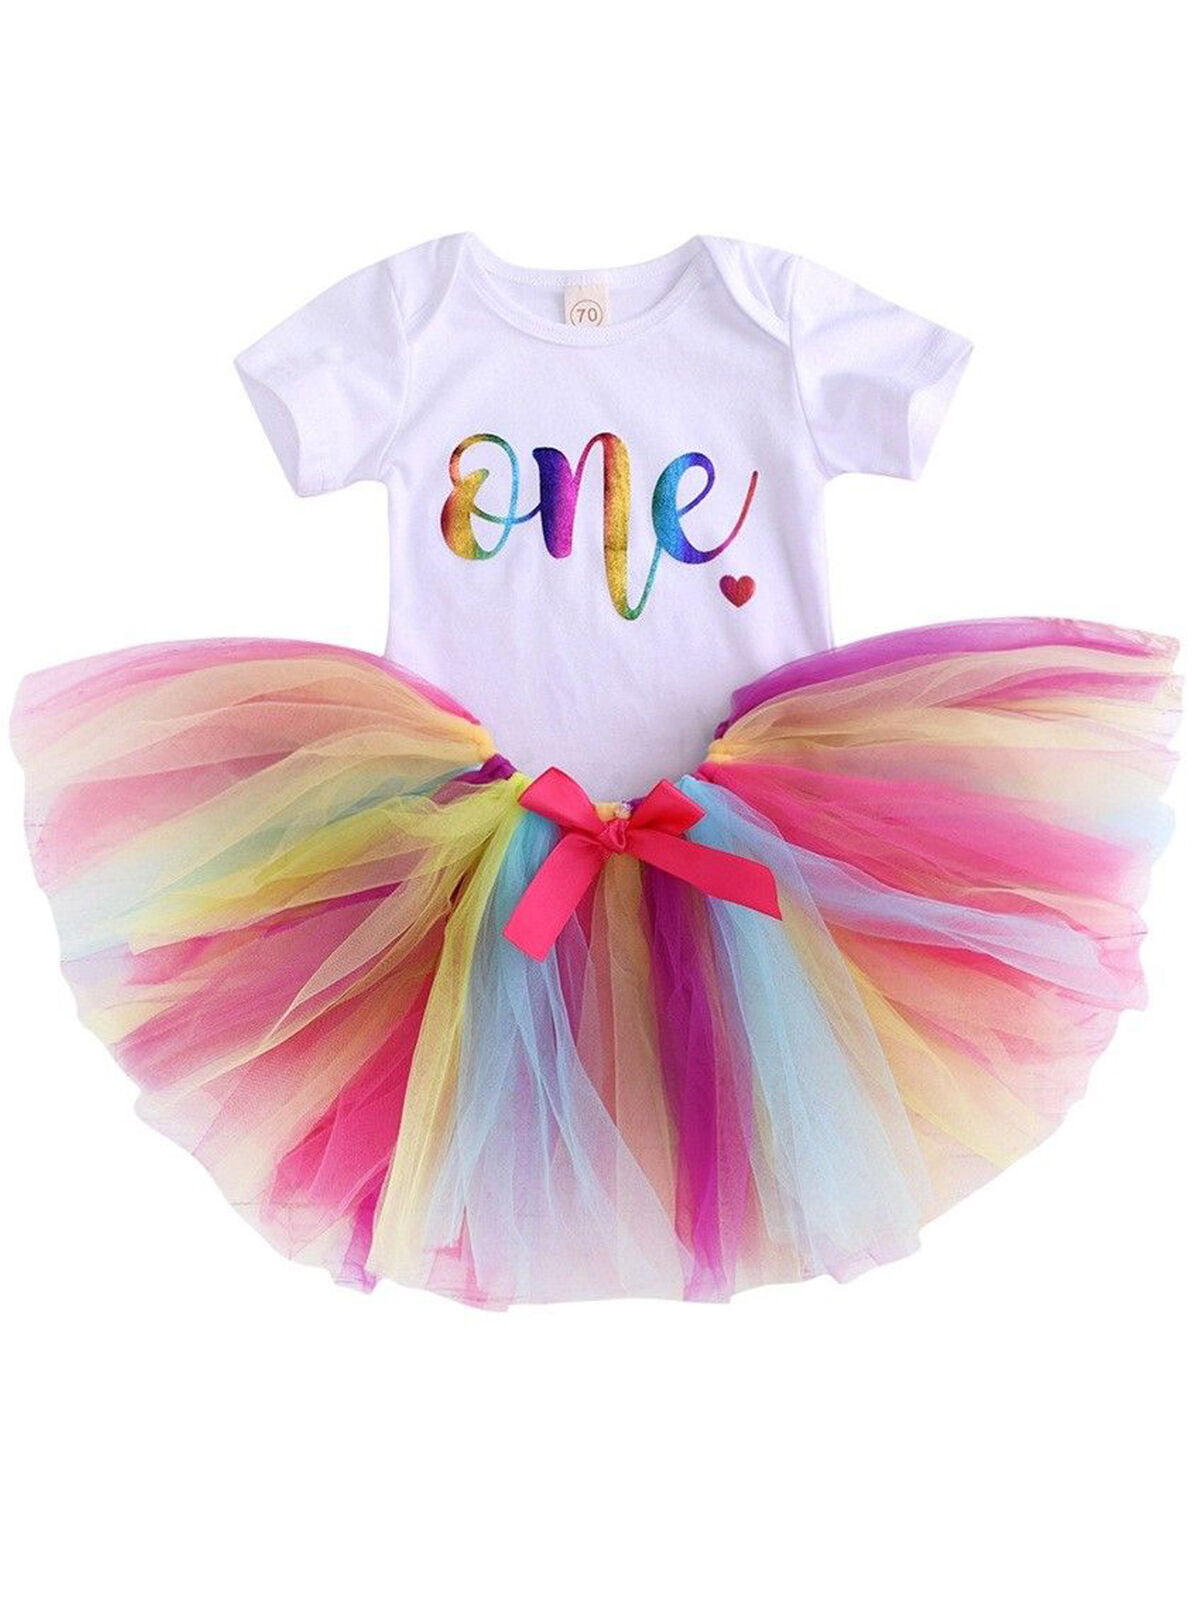 Baby Girls 1st Birthday Outfit Flutter Sleeve Romper Star Tulle Skirt 3pcs Set